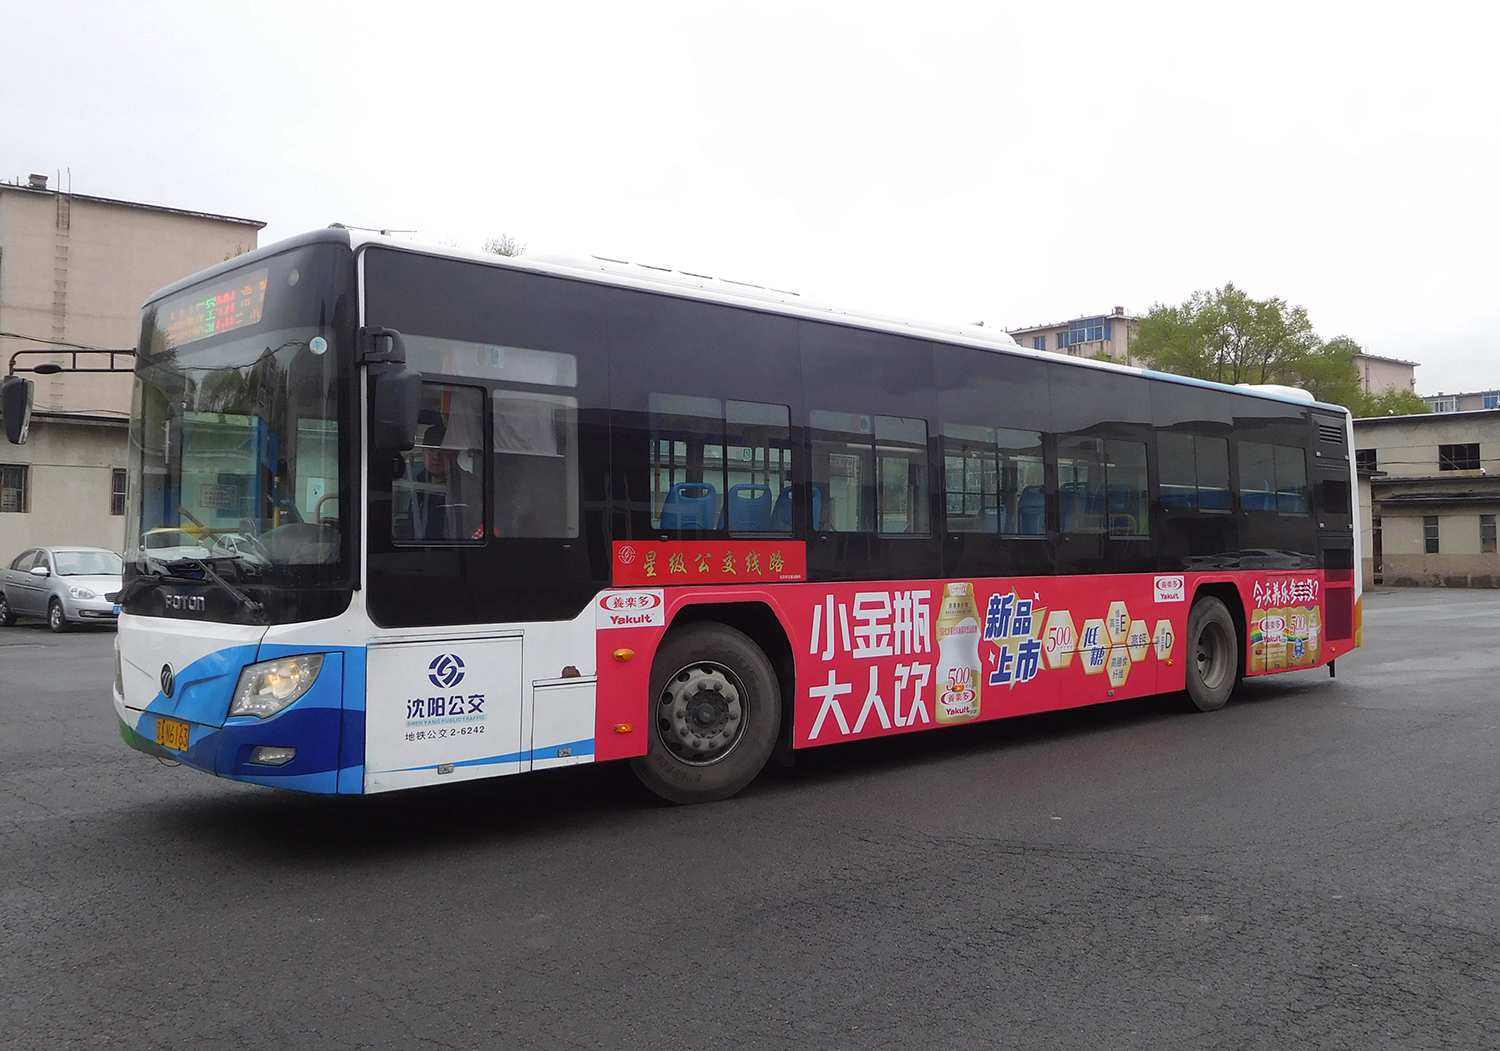 沈阳地铁公交车体广告 每一站都是城市的故事